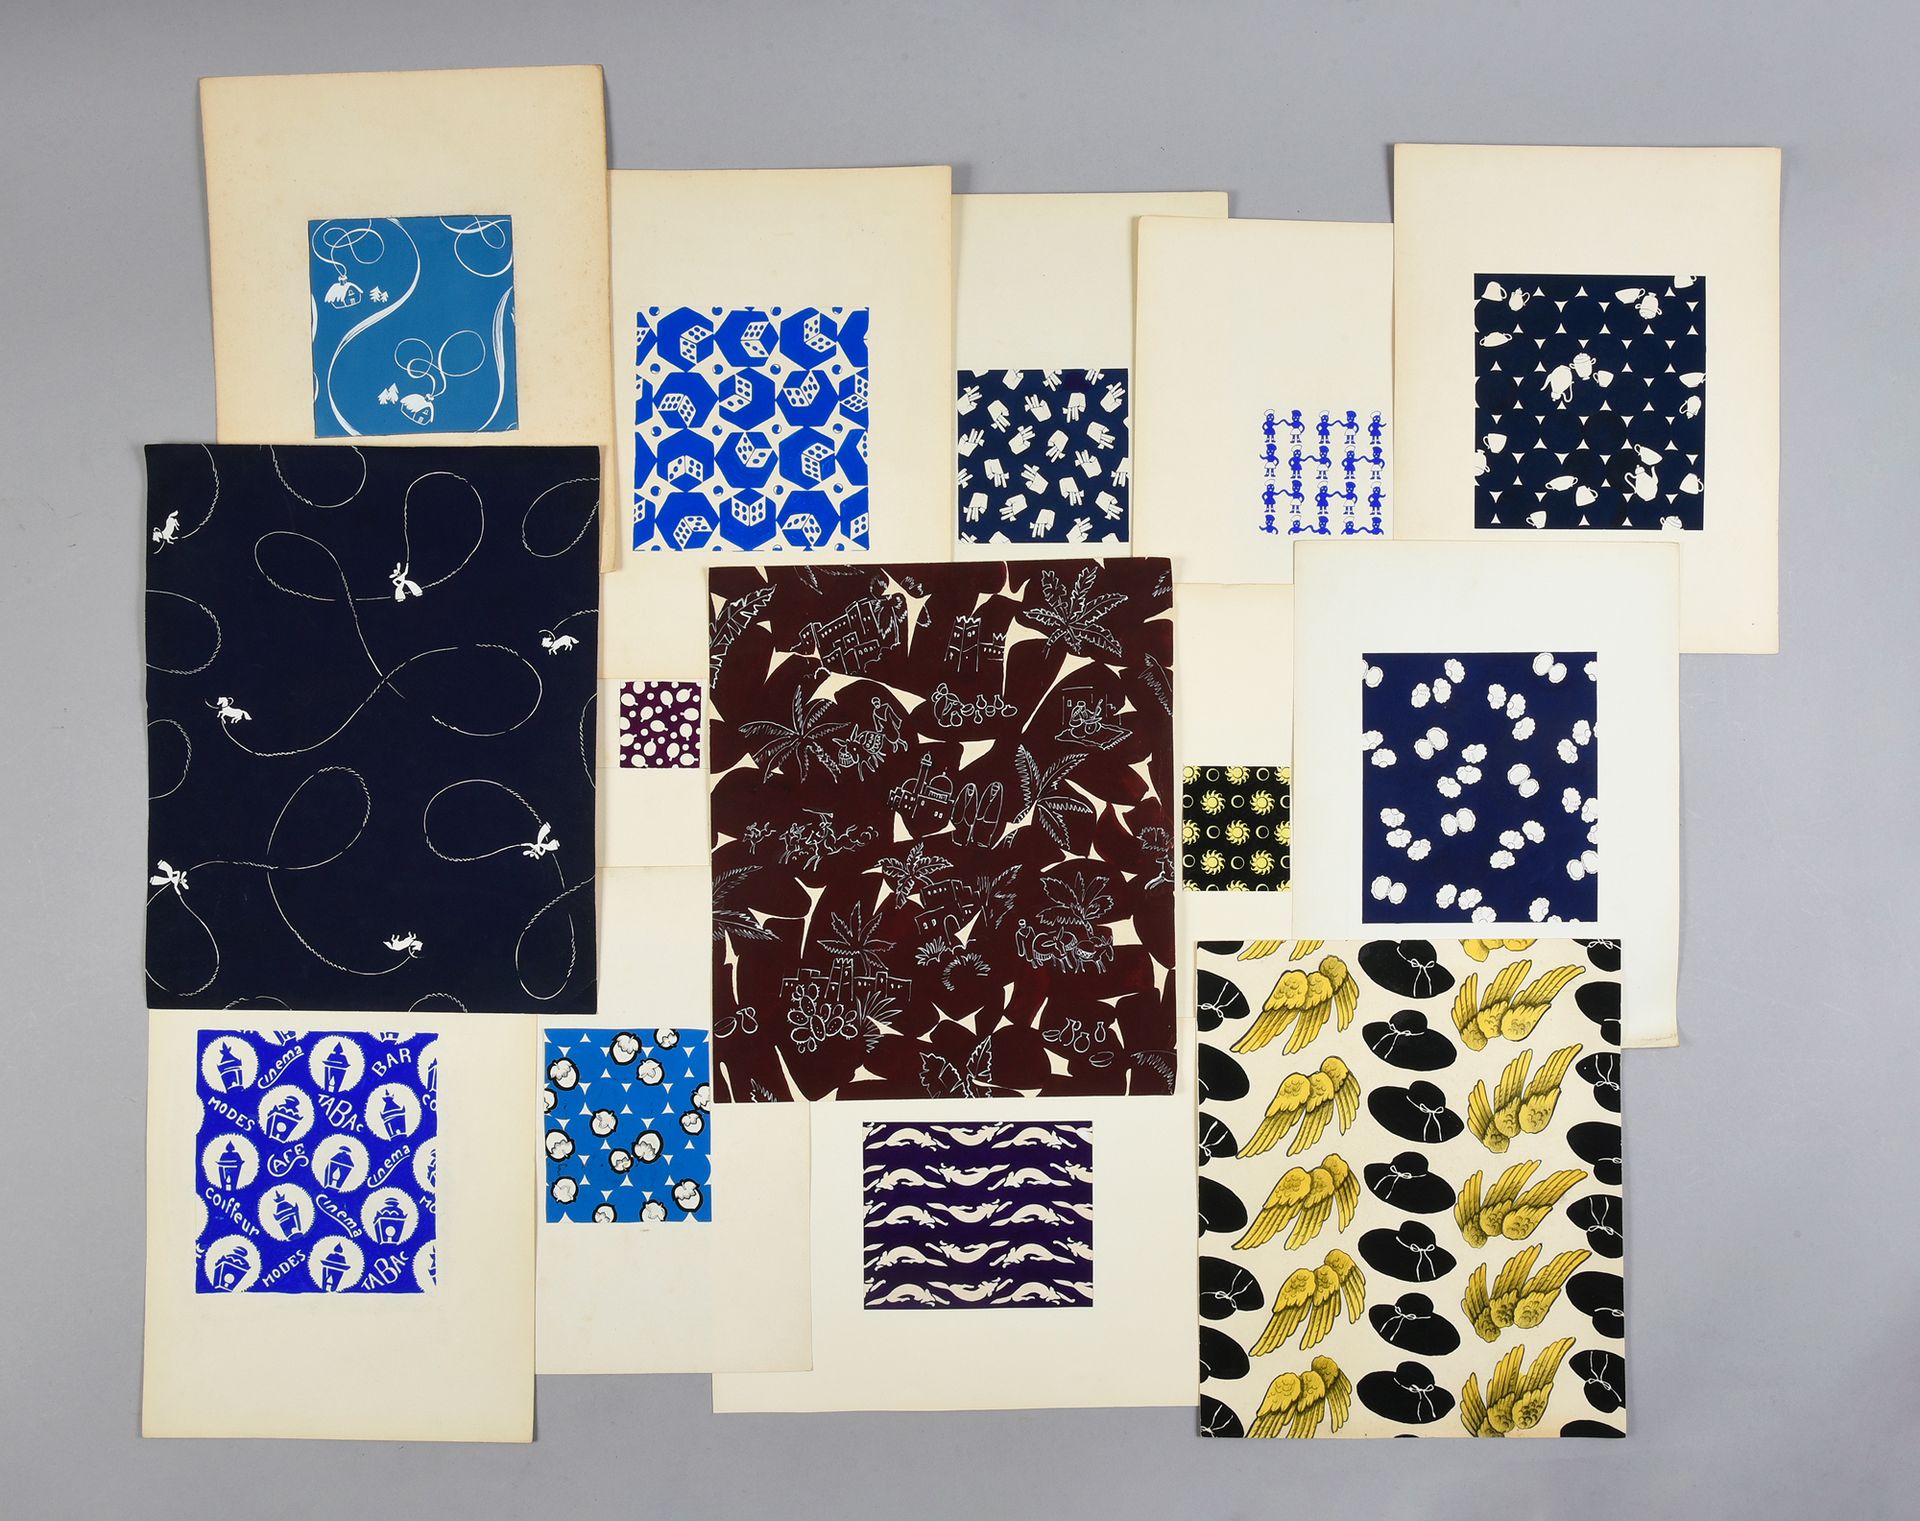 Null 一组时尚织物模型，1950-1970年左右，水粉和墨水在纸上；许多幻想构图，主要是单色的，包括乒乓球，骰子，香烟盒，贝壳，一群人物或鸟的翅膀和帽线。
&hellip;